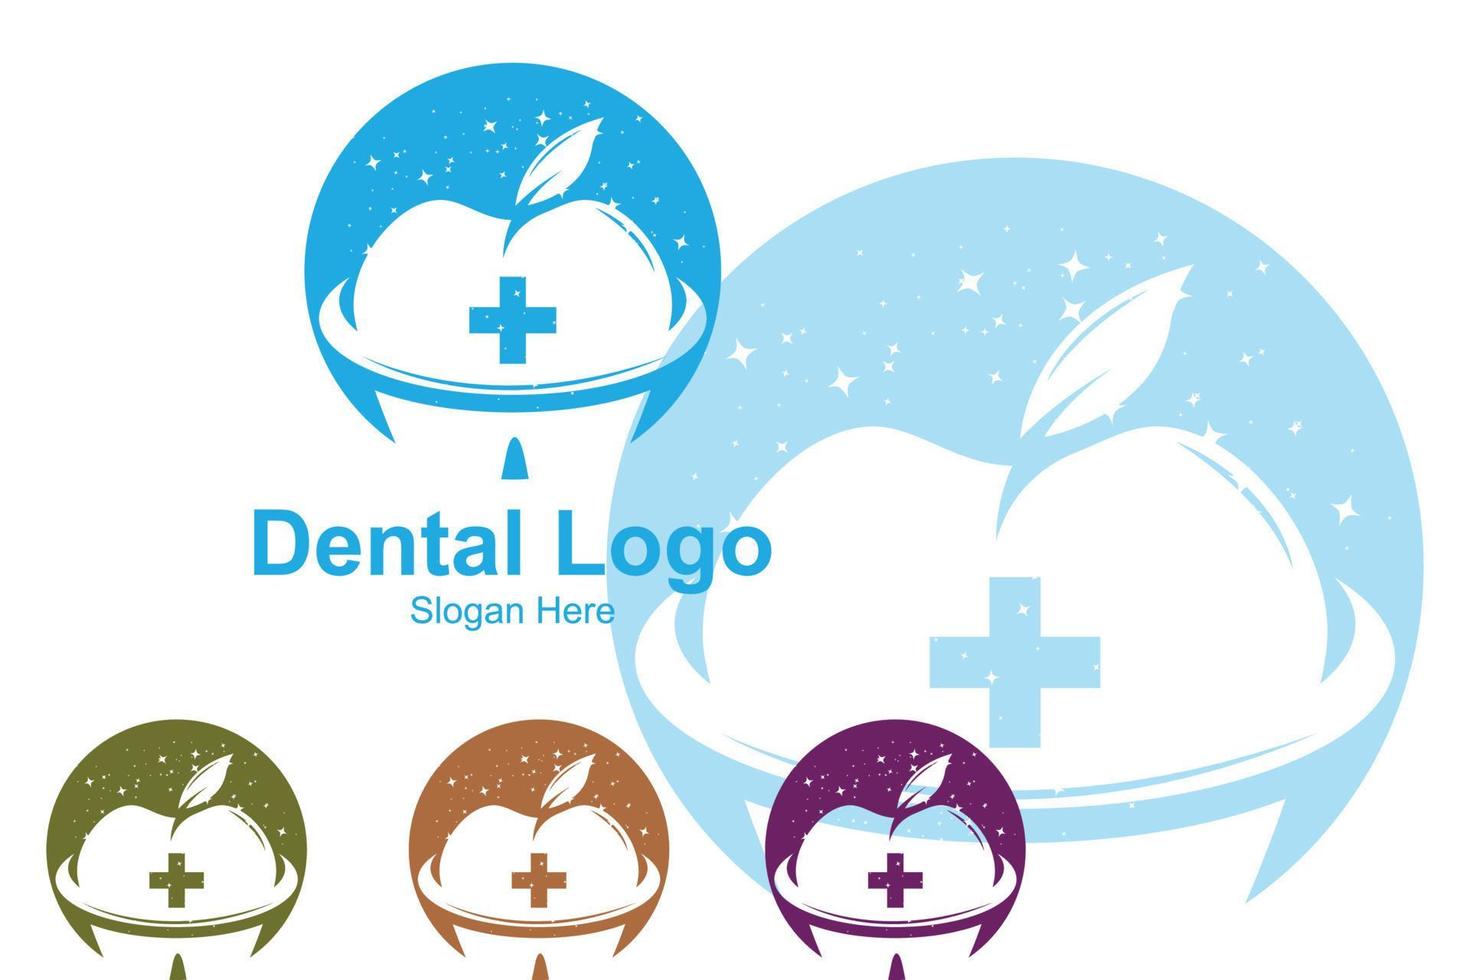 Logo-Vektor für Zahngesundheit, Pflege und Pflege von Zähnen, Design für Siebdruck, Unternehmen, Aufkleber, Hintergrund vektor